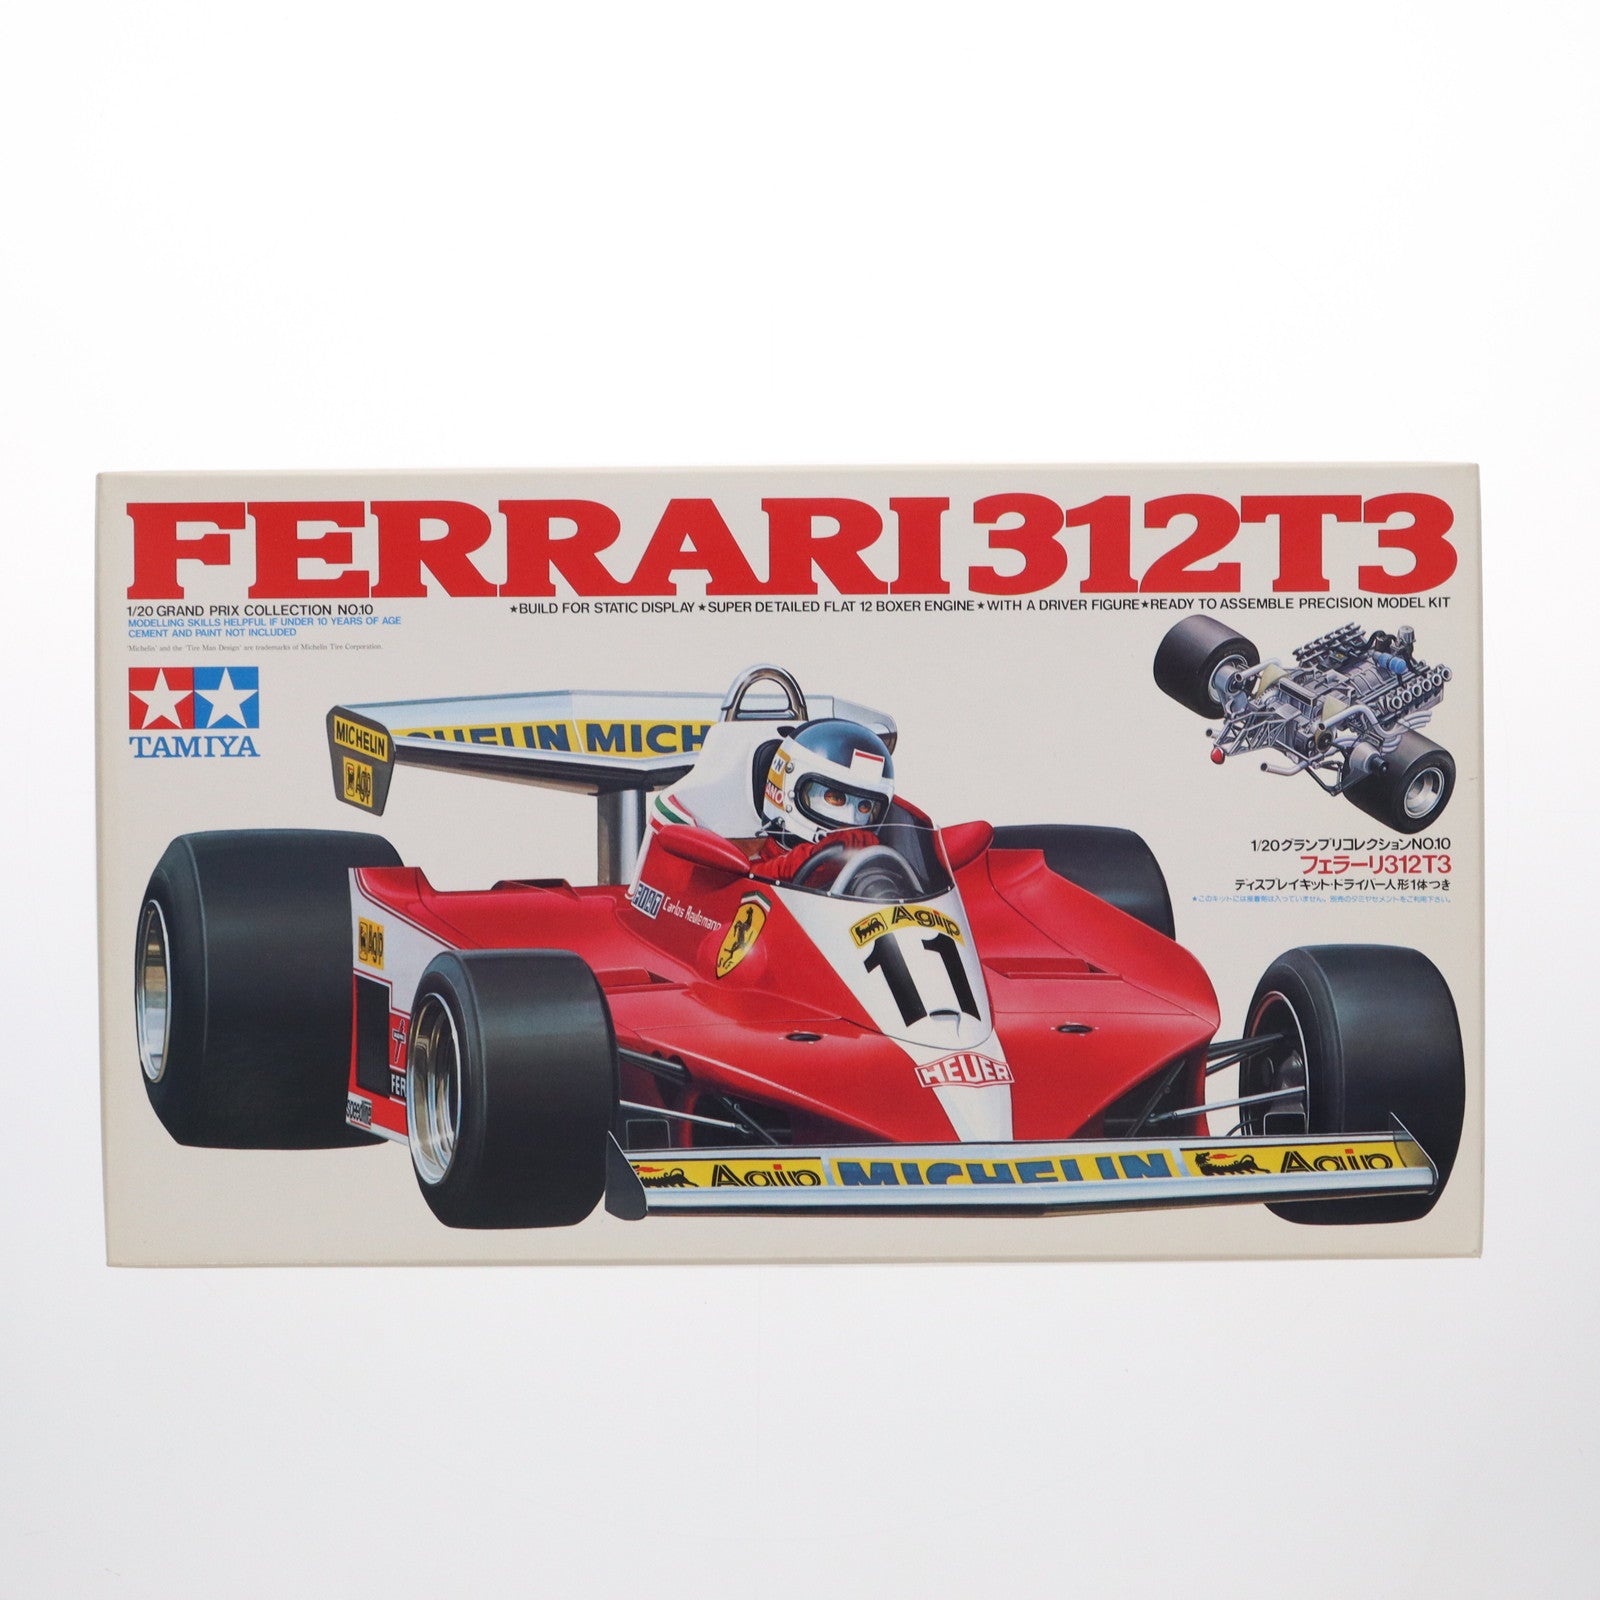 【中古即納】[PTM]グランプリコレクション No.10 1/20 フェラーリ312T3 ディスプレイモデル プラモデル(20010) タミヤ(19991231)